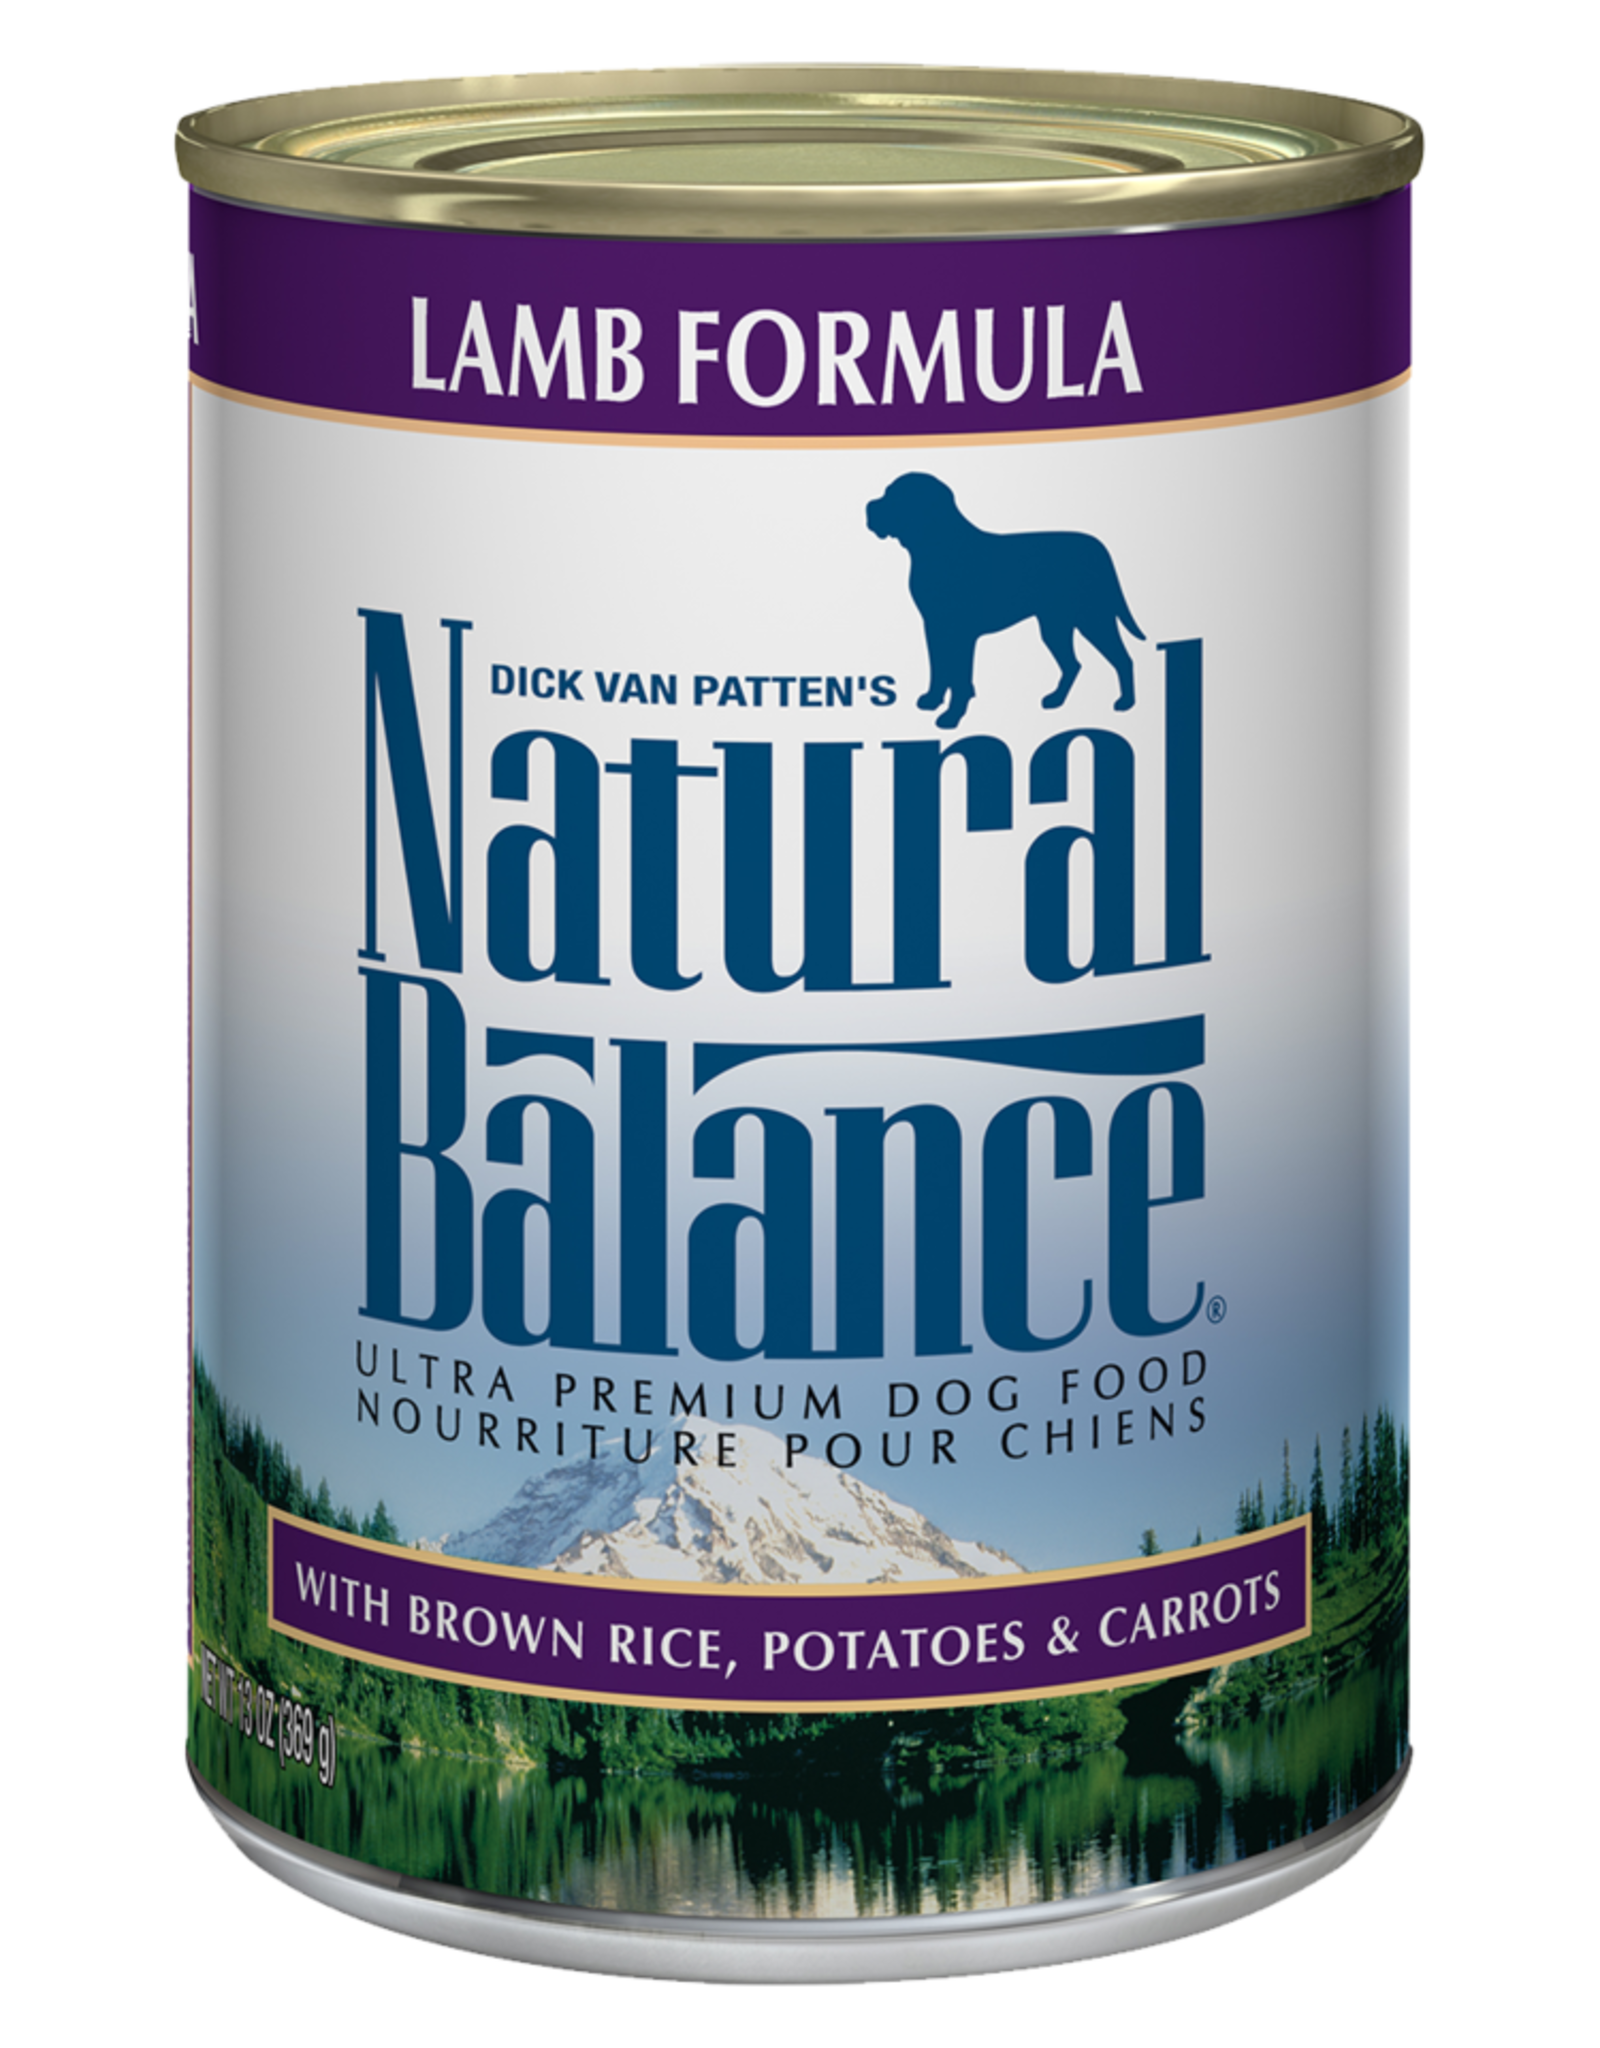 NATURAL BALANCE PET FOODS, INC NATURAL BALANCE DOG ULTRA LAMB FORMULA CAN 13Z CASE OF 12